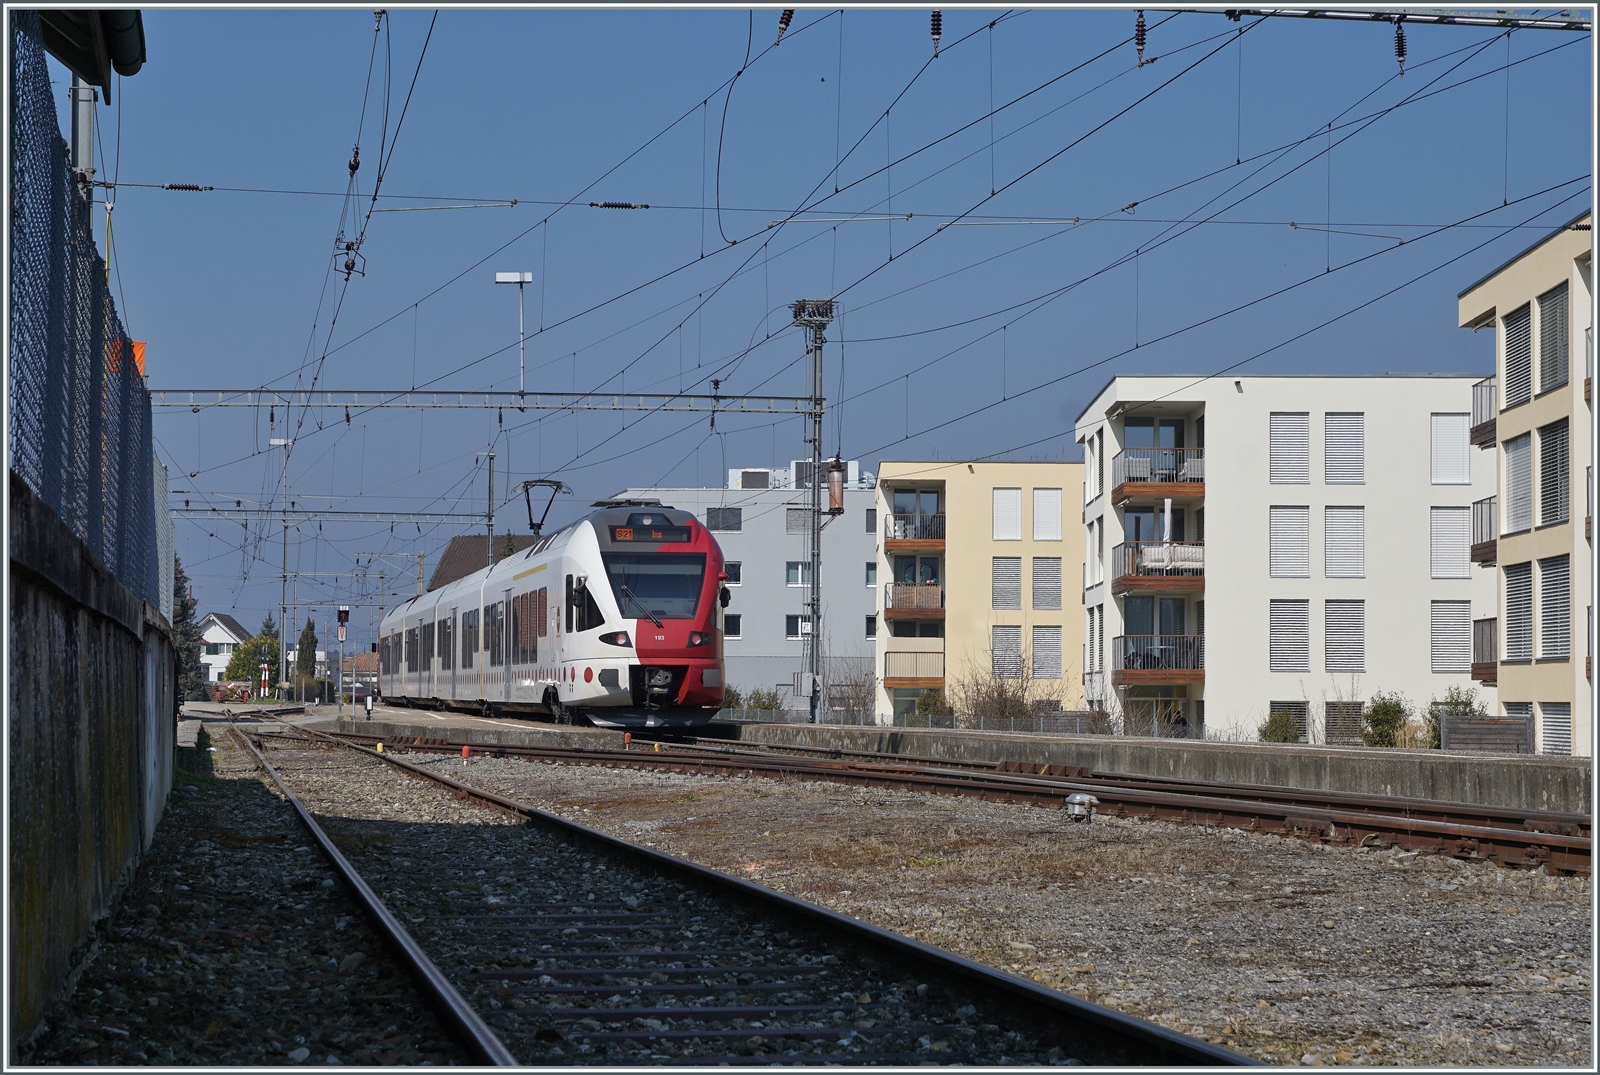 Der Bahnhof von Sugiez ist noch einer der wenigen nicht modernisierten GFM/TPF Stationen, wobei die Arbeiten zum Umbau wohl nicht mehr lange auf sich warten lassen. Im Bild der TPF RABe 527 193 auf dem Weg nach Ins.

9. März 2022